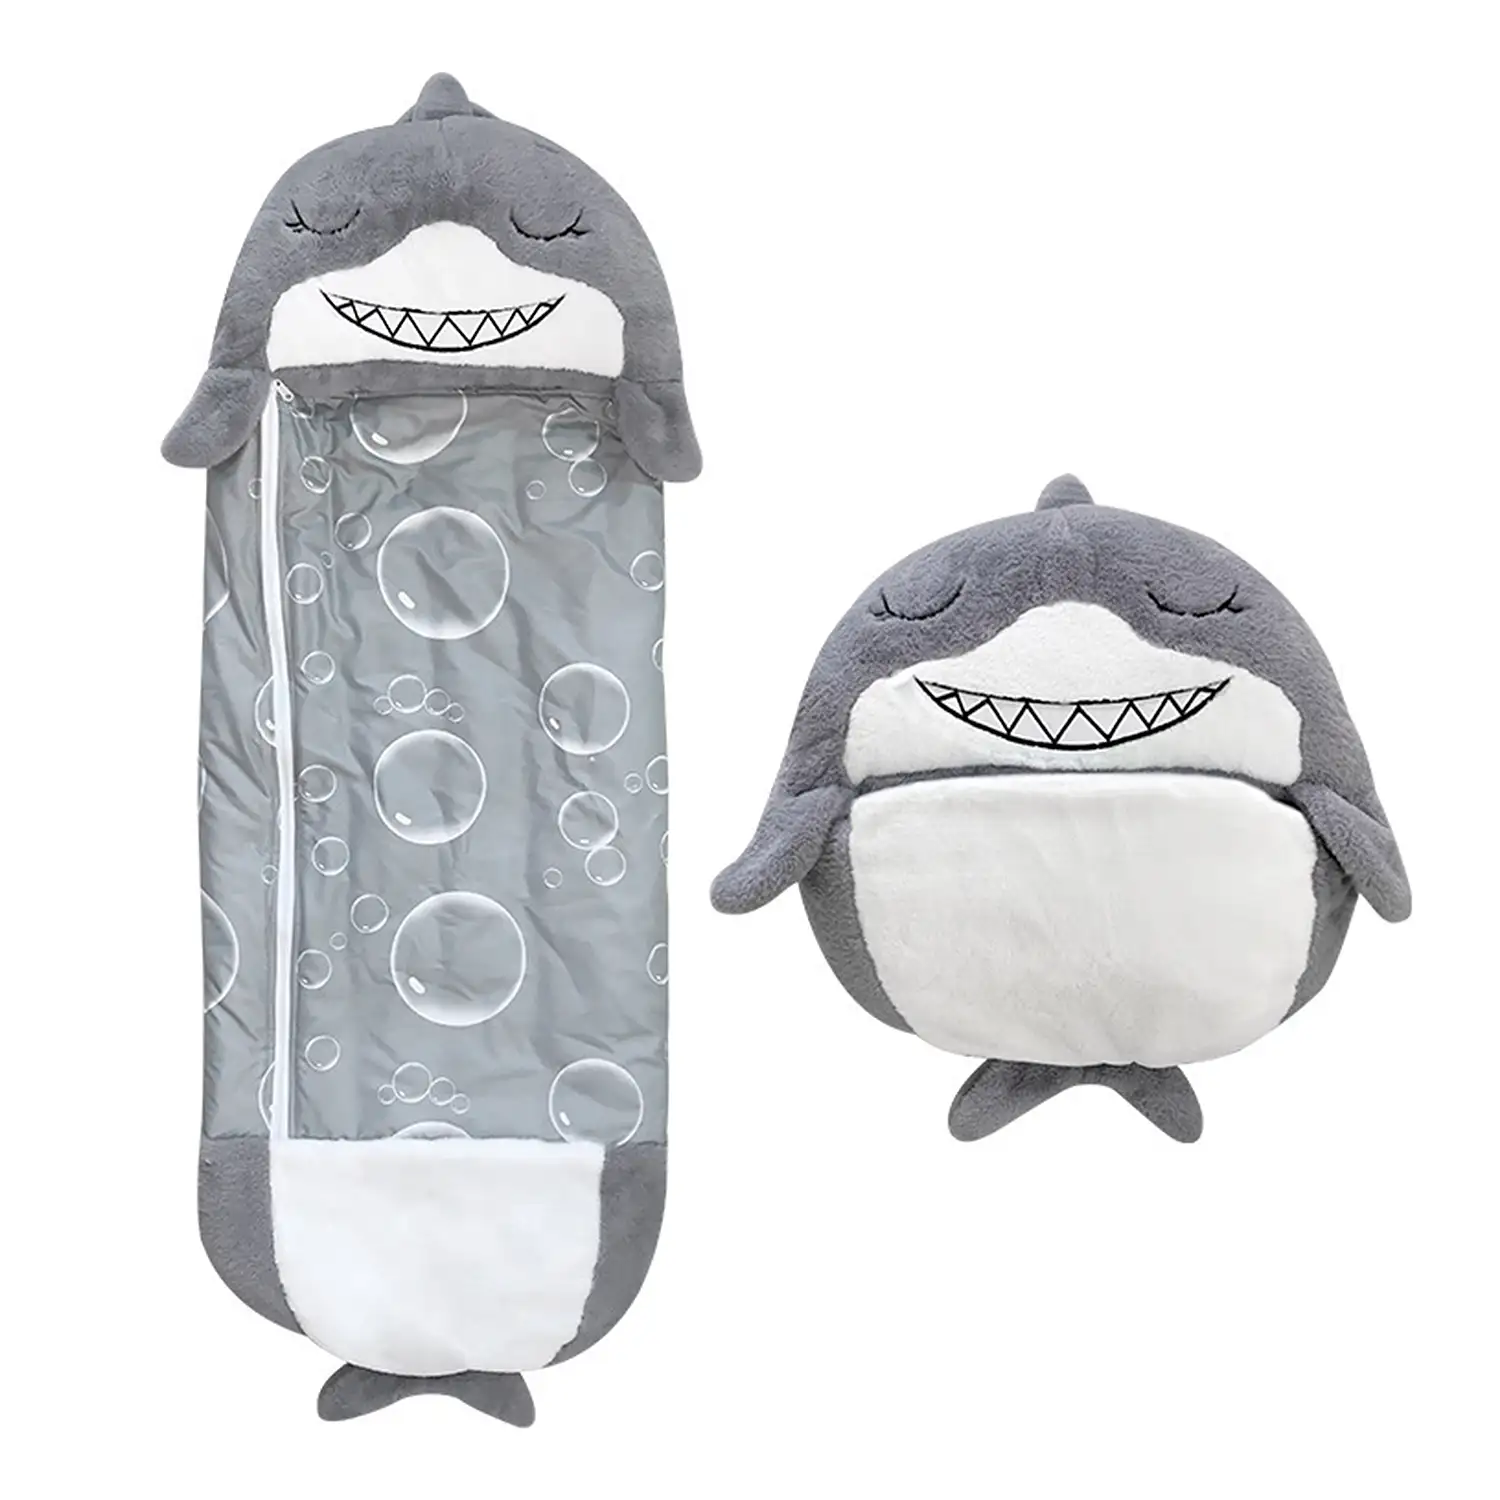 Saco de dormir convertible en almohada, para niños, Tiburón. Tacto peluche. Pequeño / S: 135x50cm.